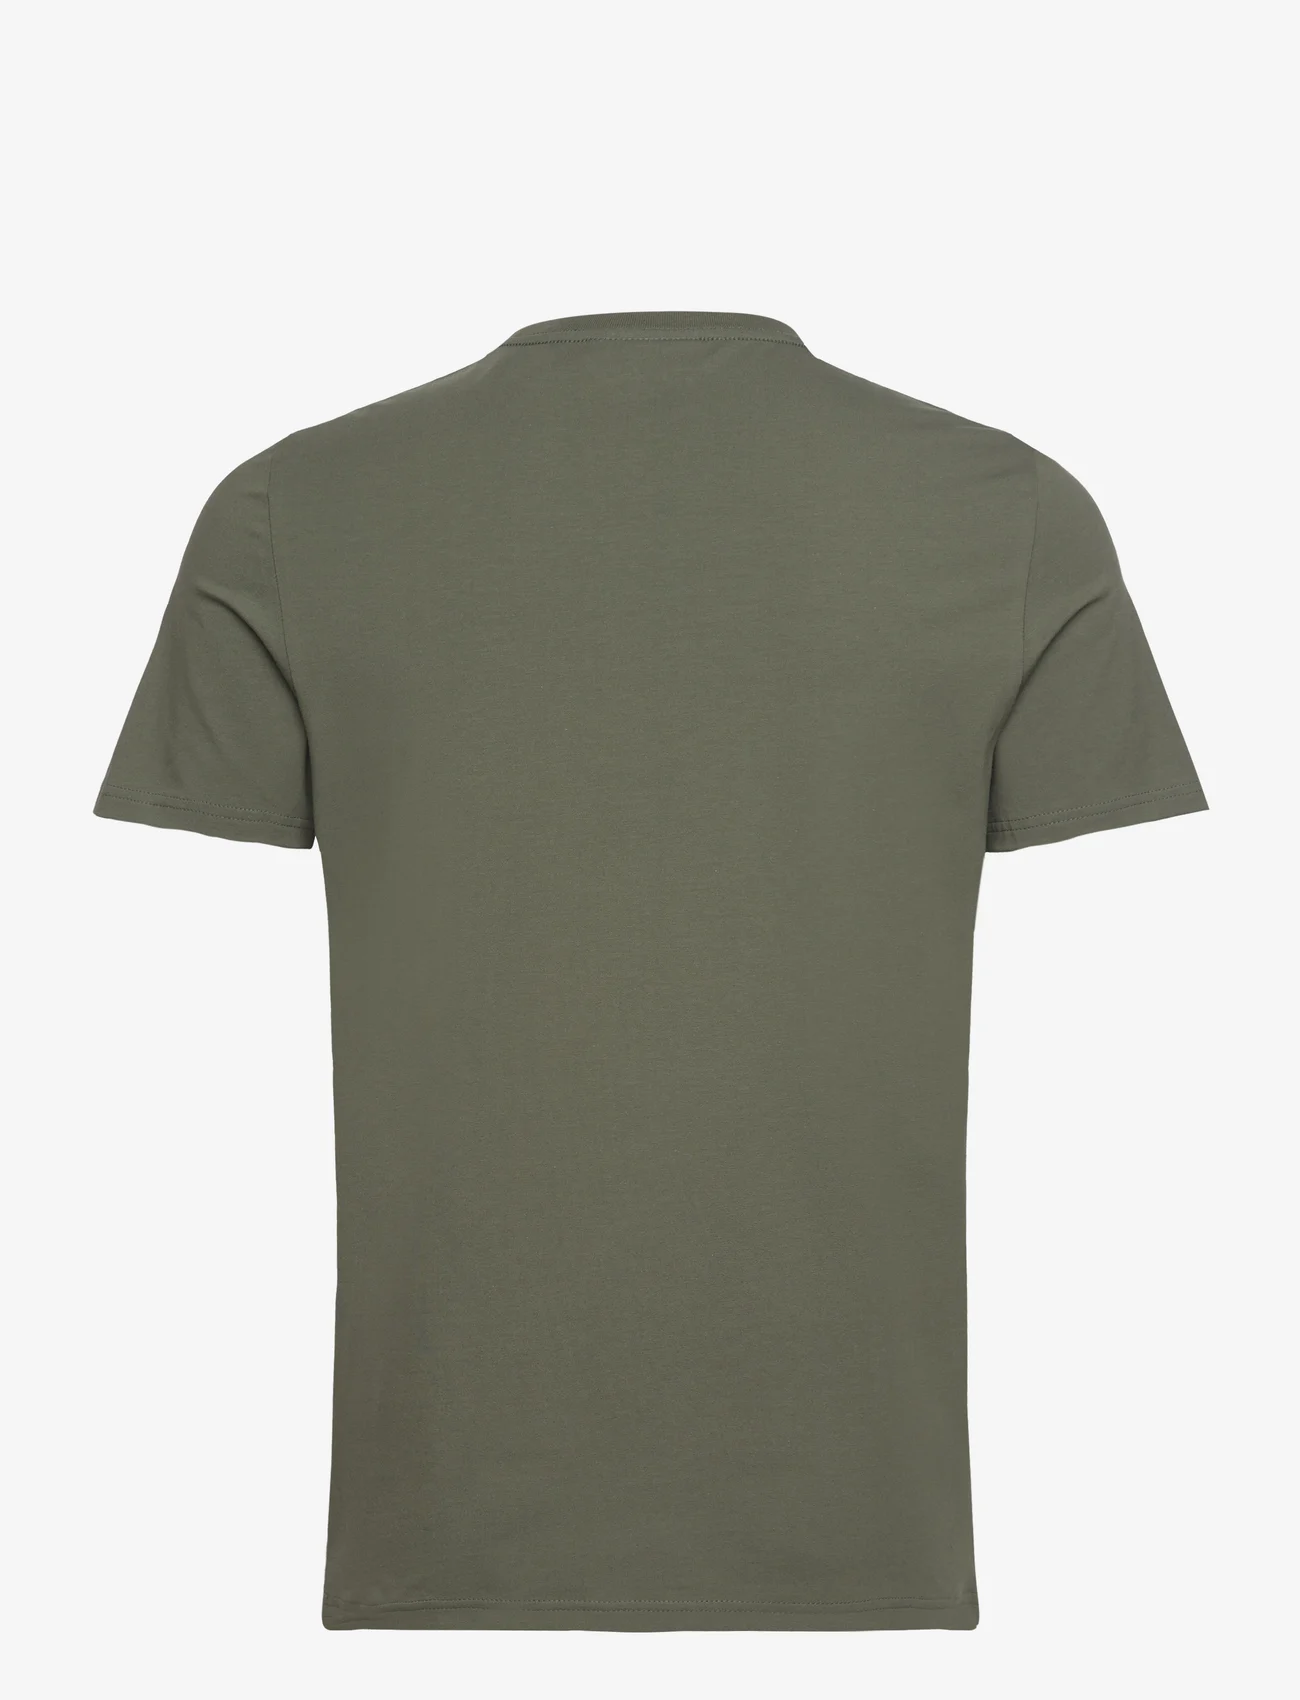 Morris - James Tee - basic t-shirts - dark olive - 1